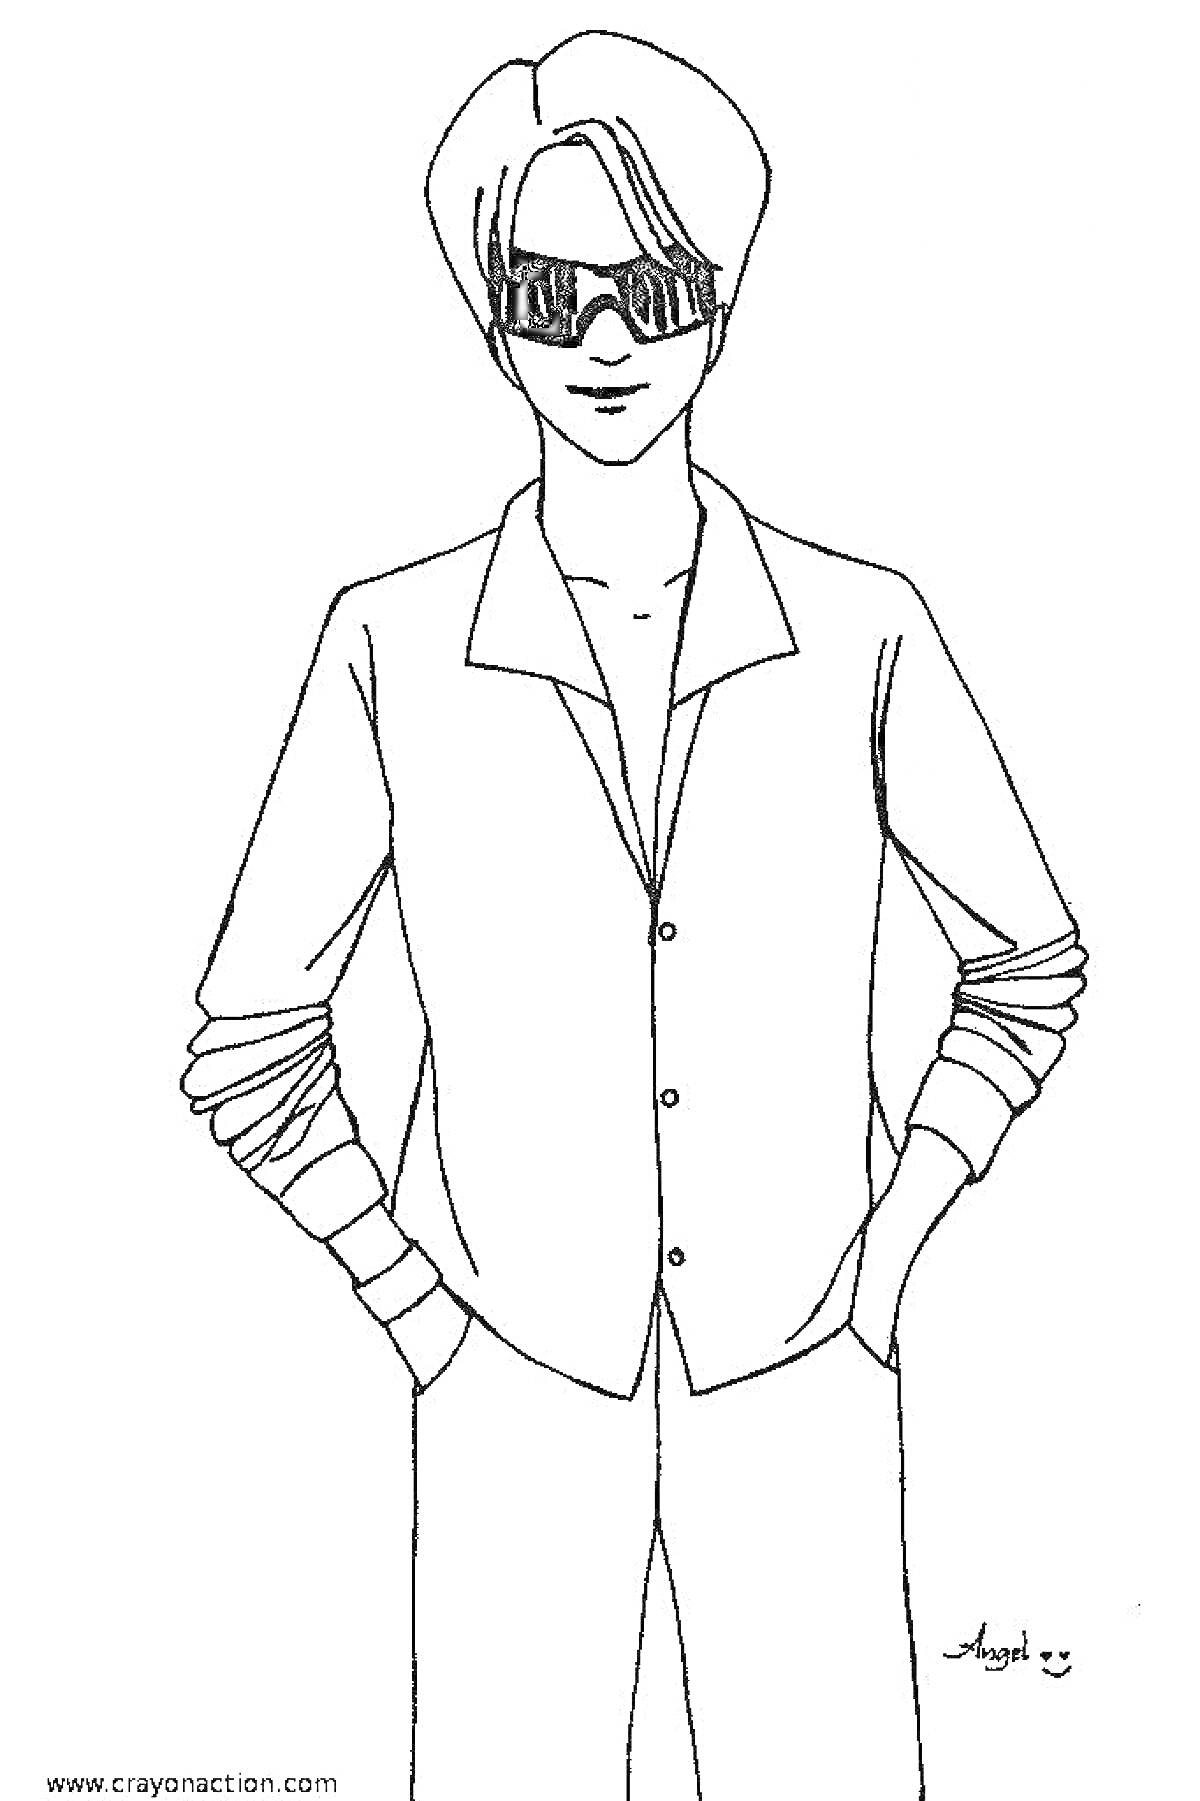 Раскраска Мужчина в солнцезащитных очках и расстегнутой рубашке с длинными рукавами, руки в карманах